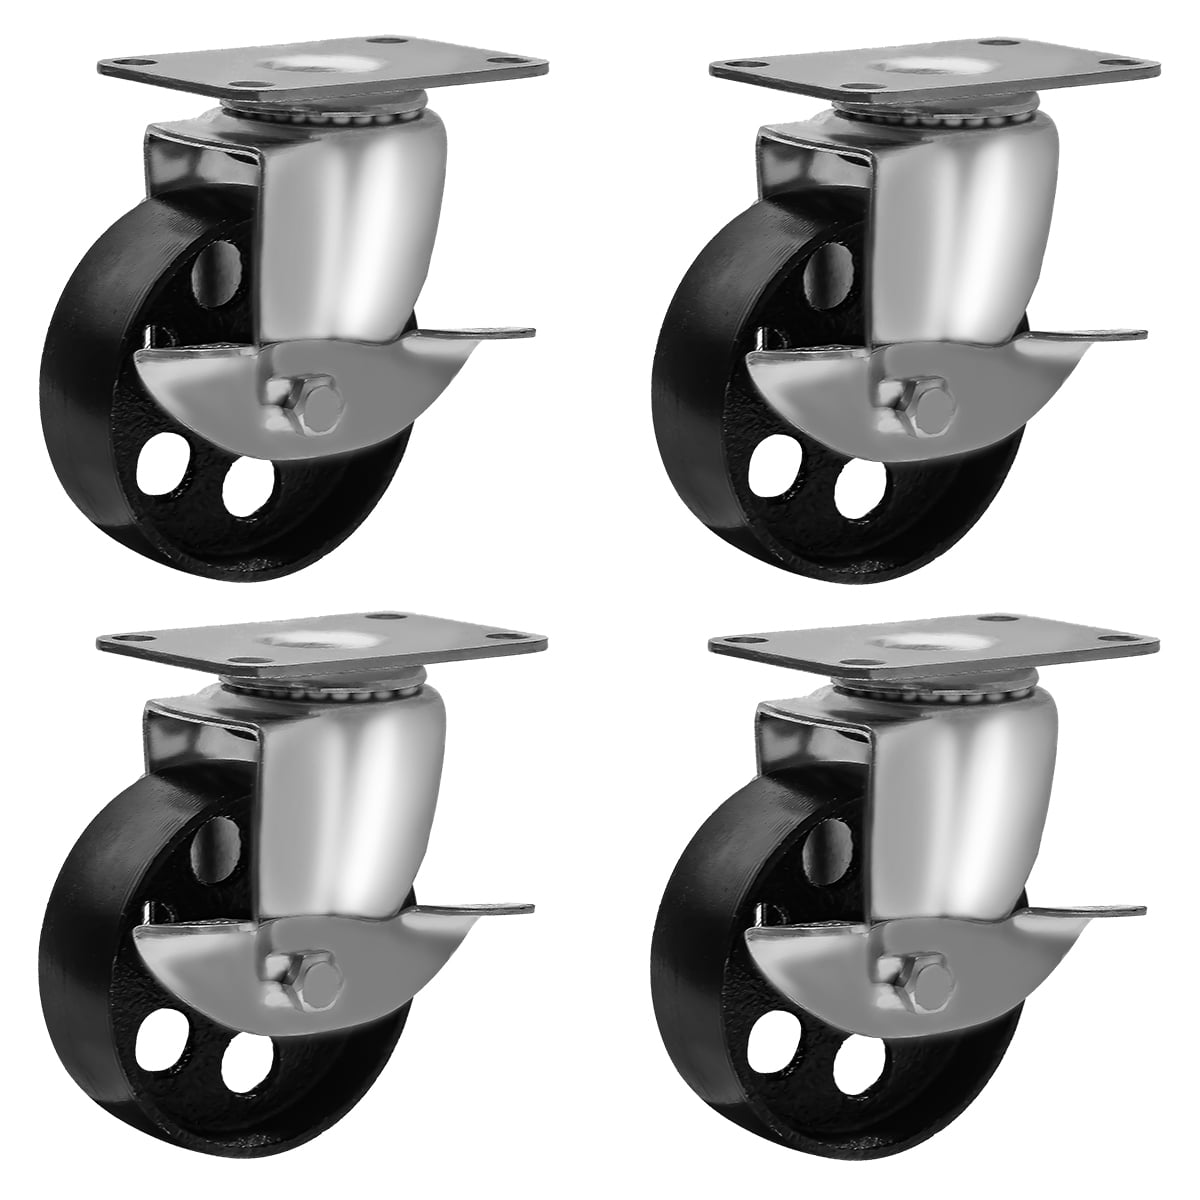 8 All Steel Swivel Plate Caster Wheels w Brake Lock Heavy Duty 3" Wheel 